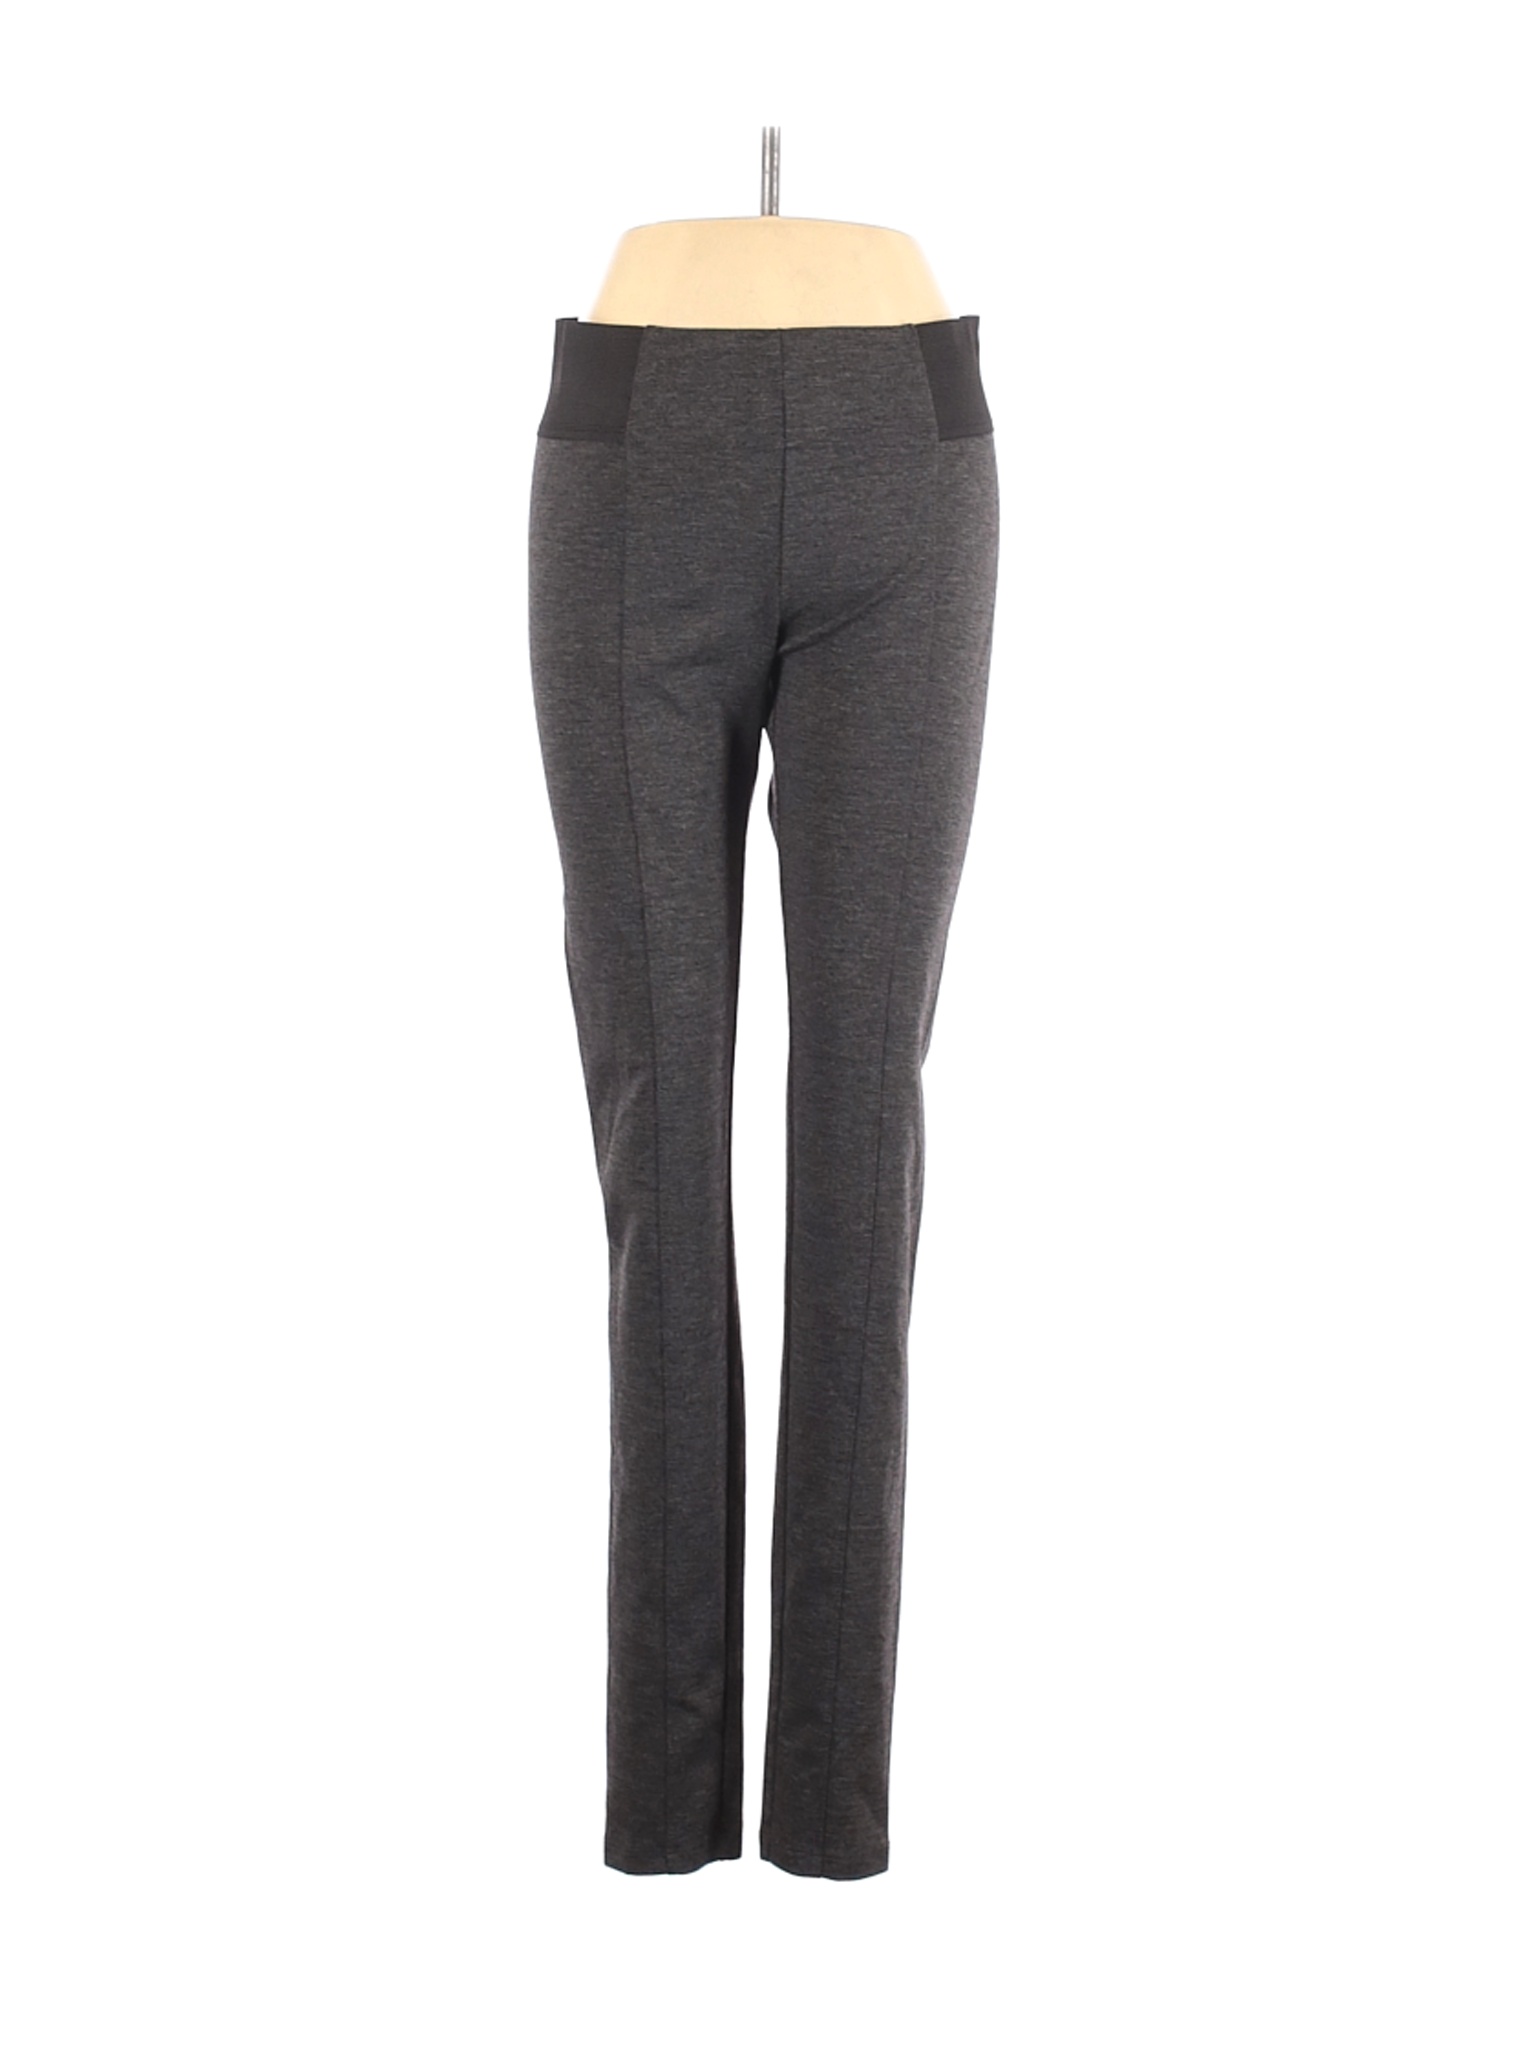 Simply Vera Vera Wang Women Gray Casual Pants S | eBay